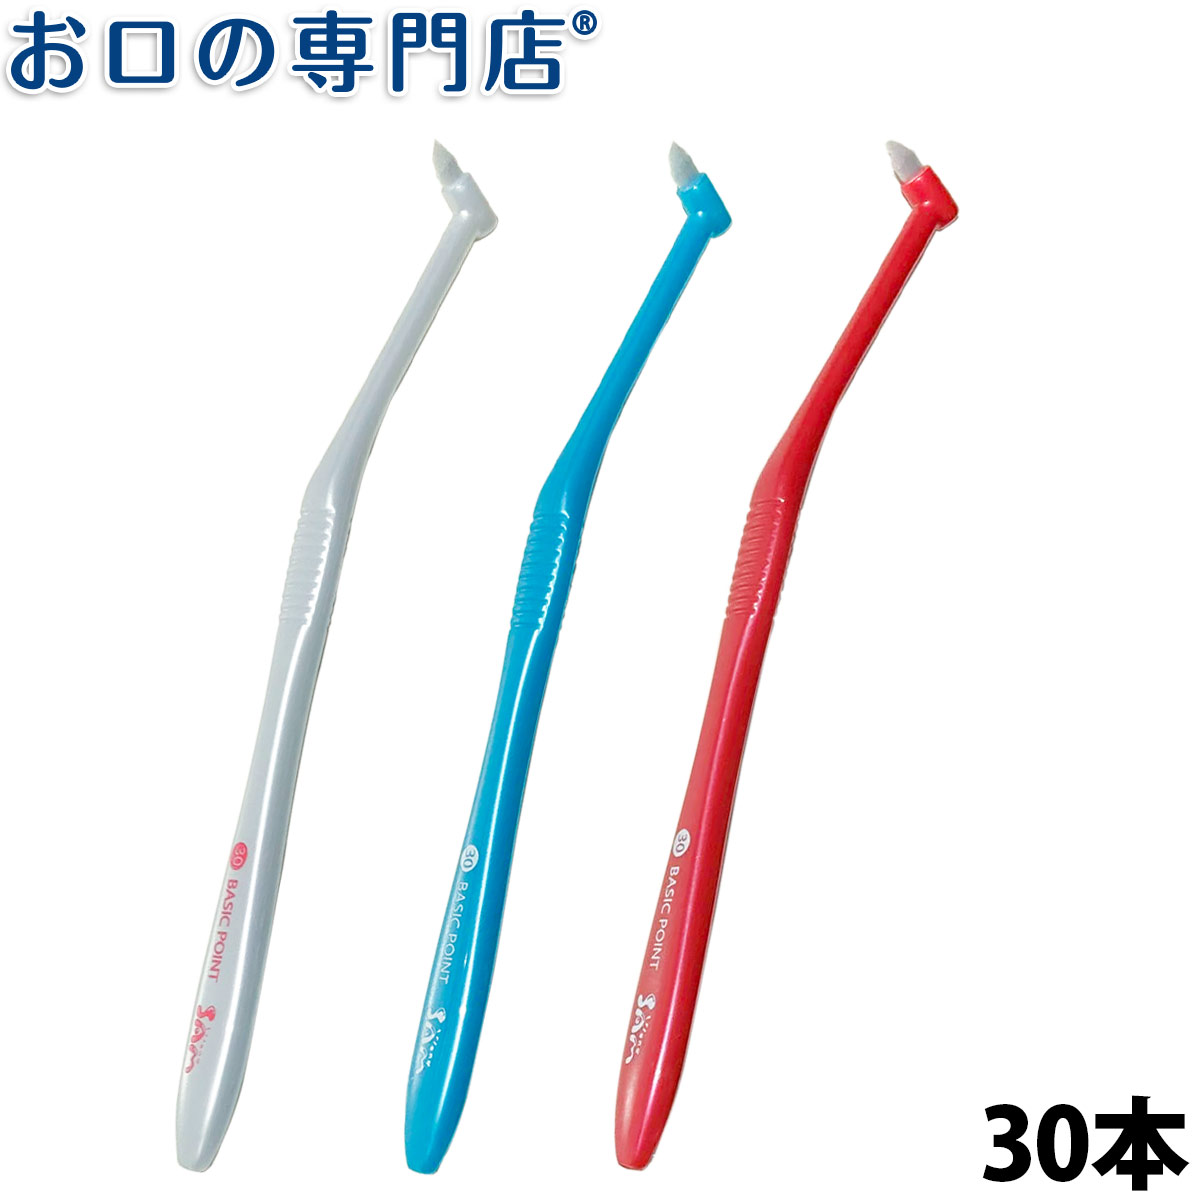 日本産 送料無料 サムフレンド歯ブラシ#30ベーシックポイント30本入 ハブラシ 歯科専売品 人気定番の 歯ブラシ